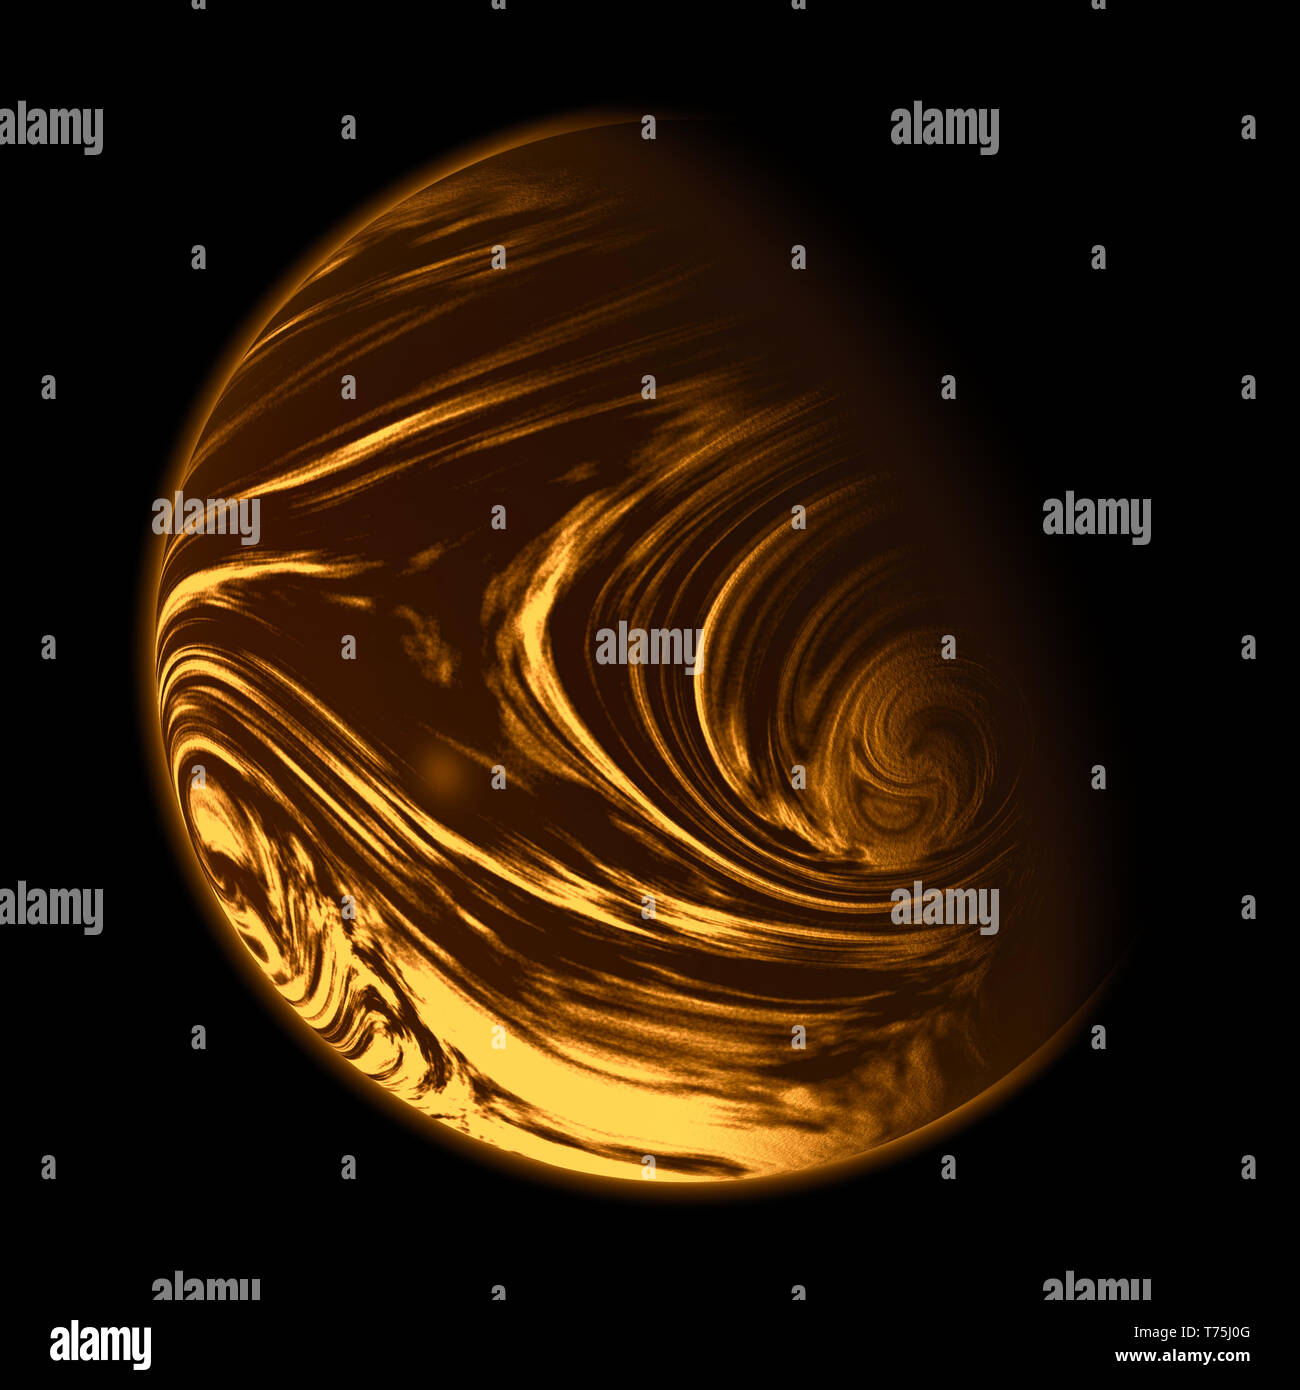 Orange planet isolated on black. Stock Photo